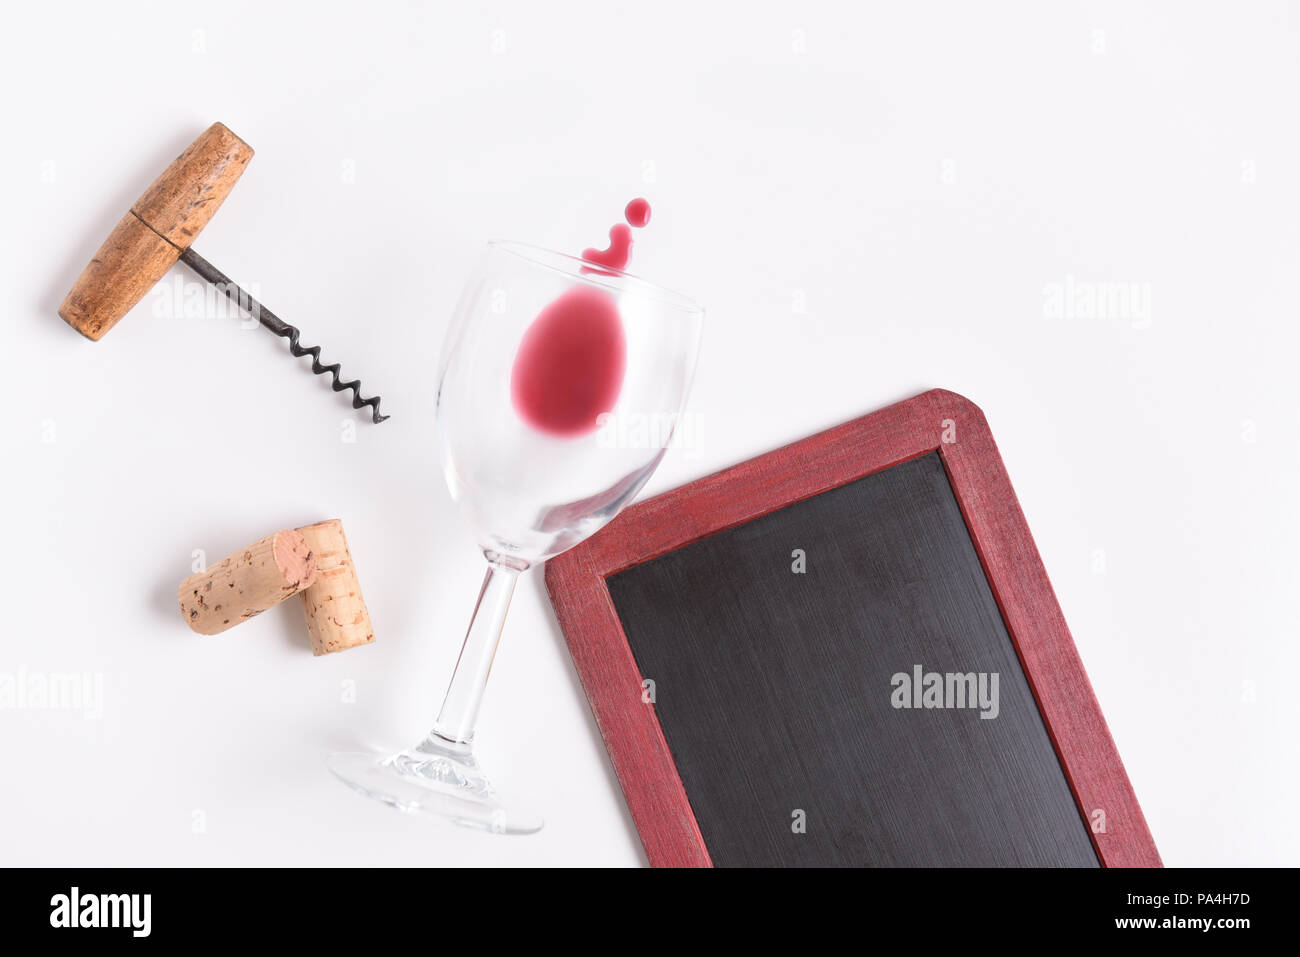 Leer Weinkarte: Schiefertafel mit Wein Glas, Korkenzieher, Korken und Wein verschüttet Weiß mit kopieren. Stockfoto